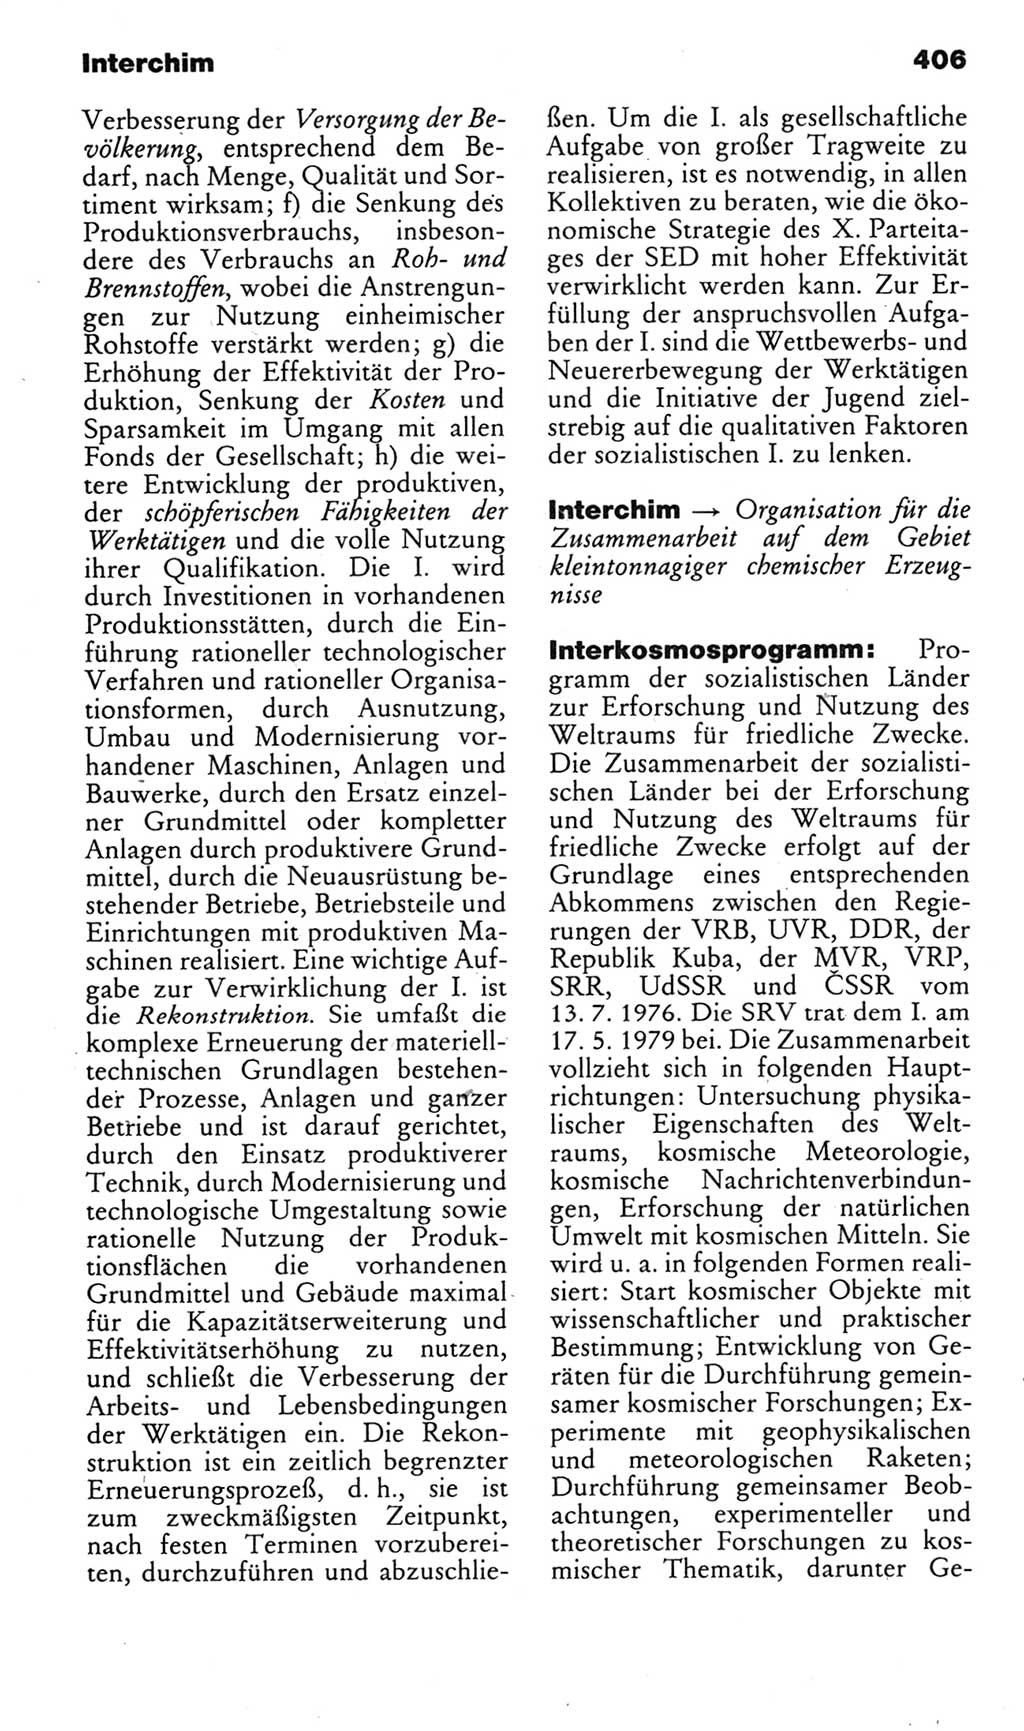 Kleines politisches Wörterbuch [Deutsche Demokratische Republik (DDR)] 1985, Seite 406 (Kl. pol. Wb. DDR 1985, S. 406)